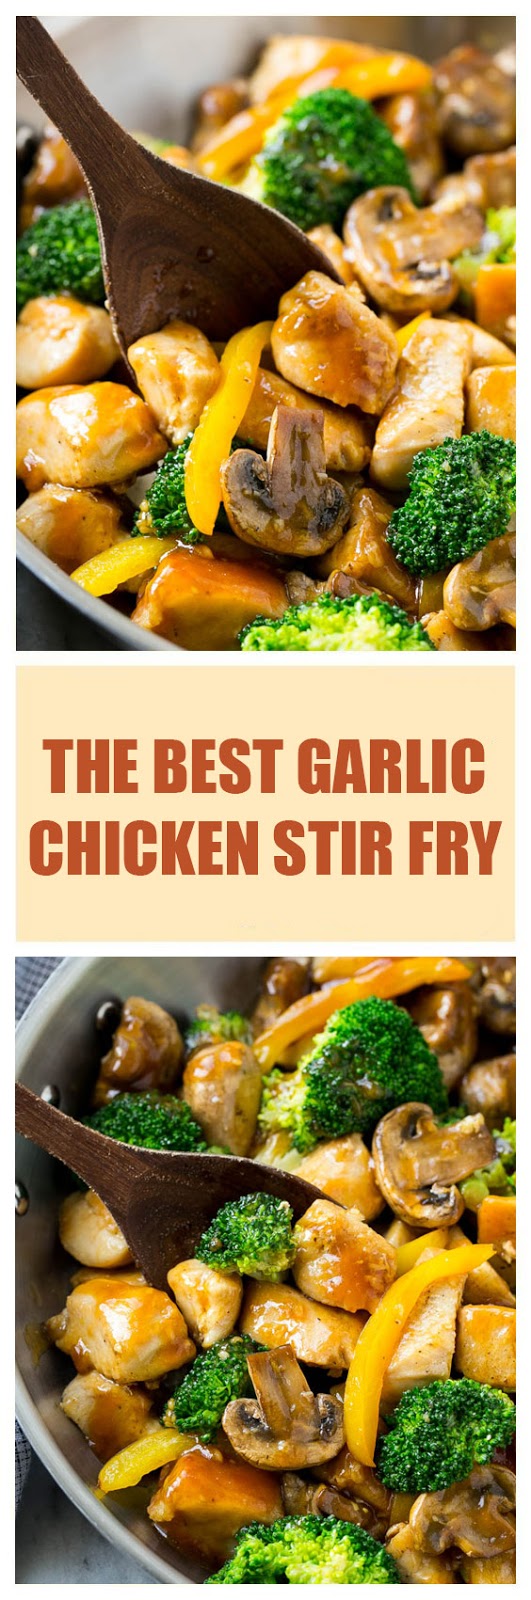 The Best Garlic Chicken Stir Fry - Best Recipes All World